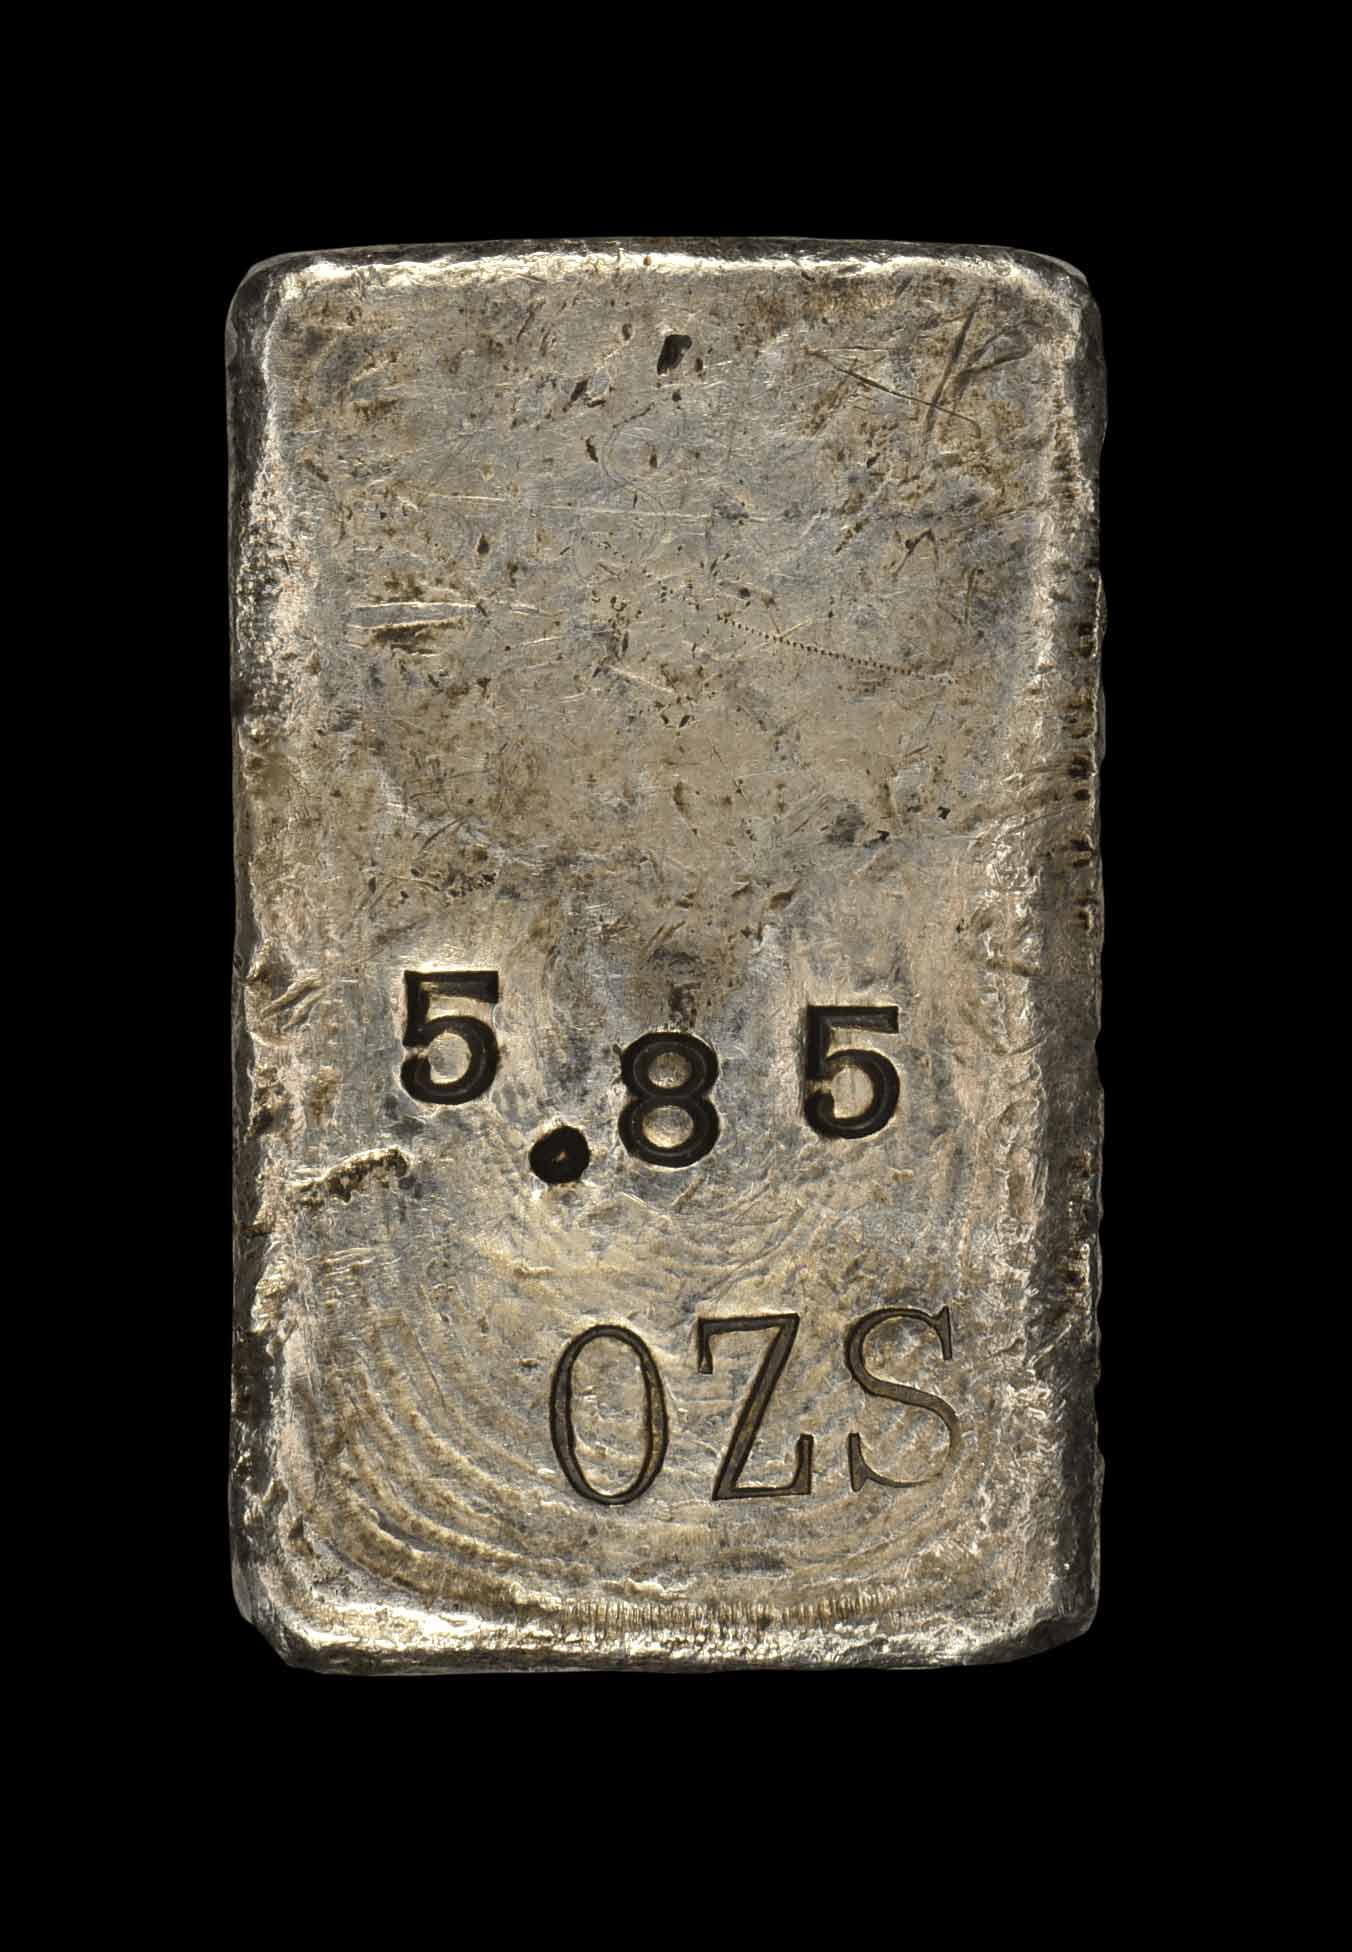 Type I, M.F., No. 1455, C.S., 5.85 ozs (r)